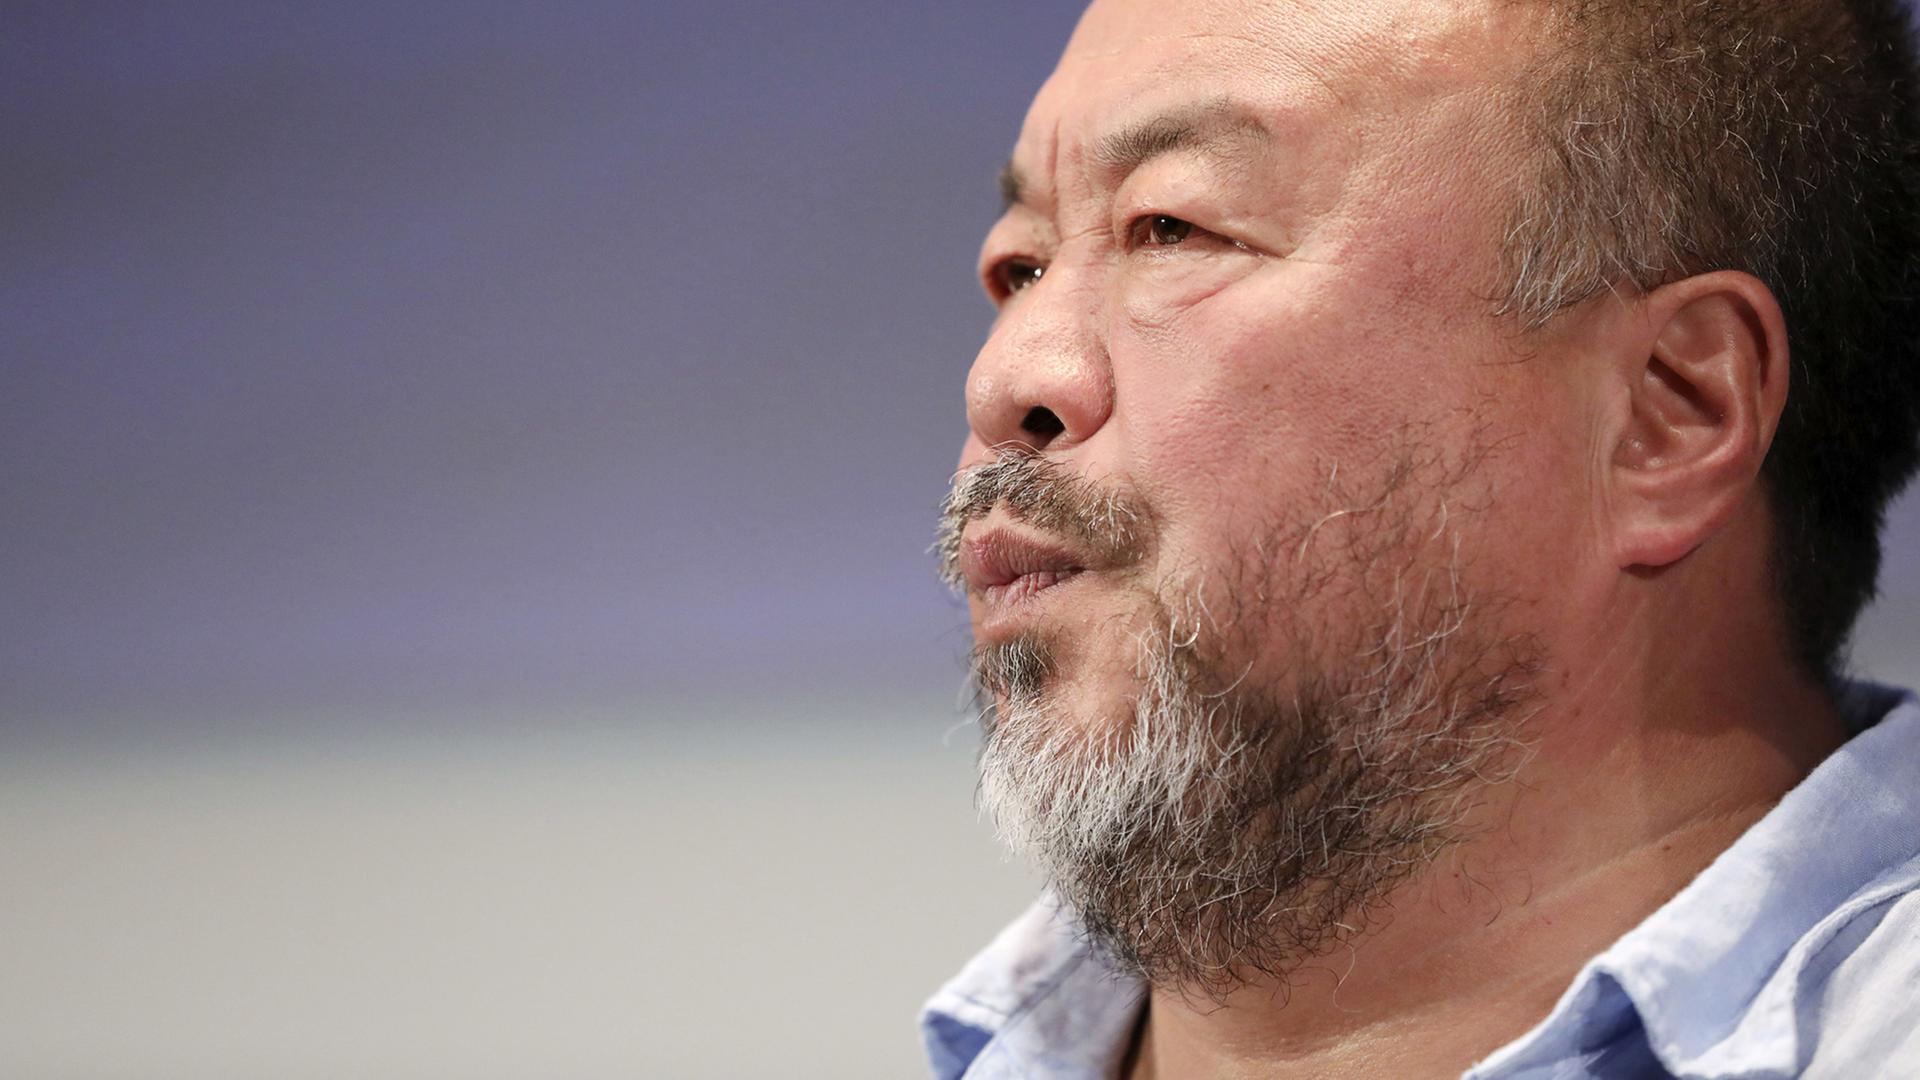 Der chinesische Künstler Ai Weiwei schaut von rechts ins Bild.